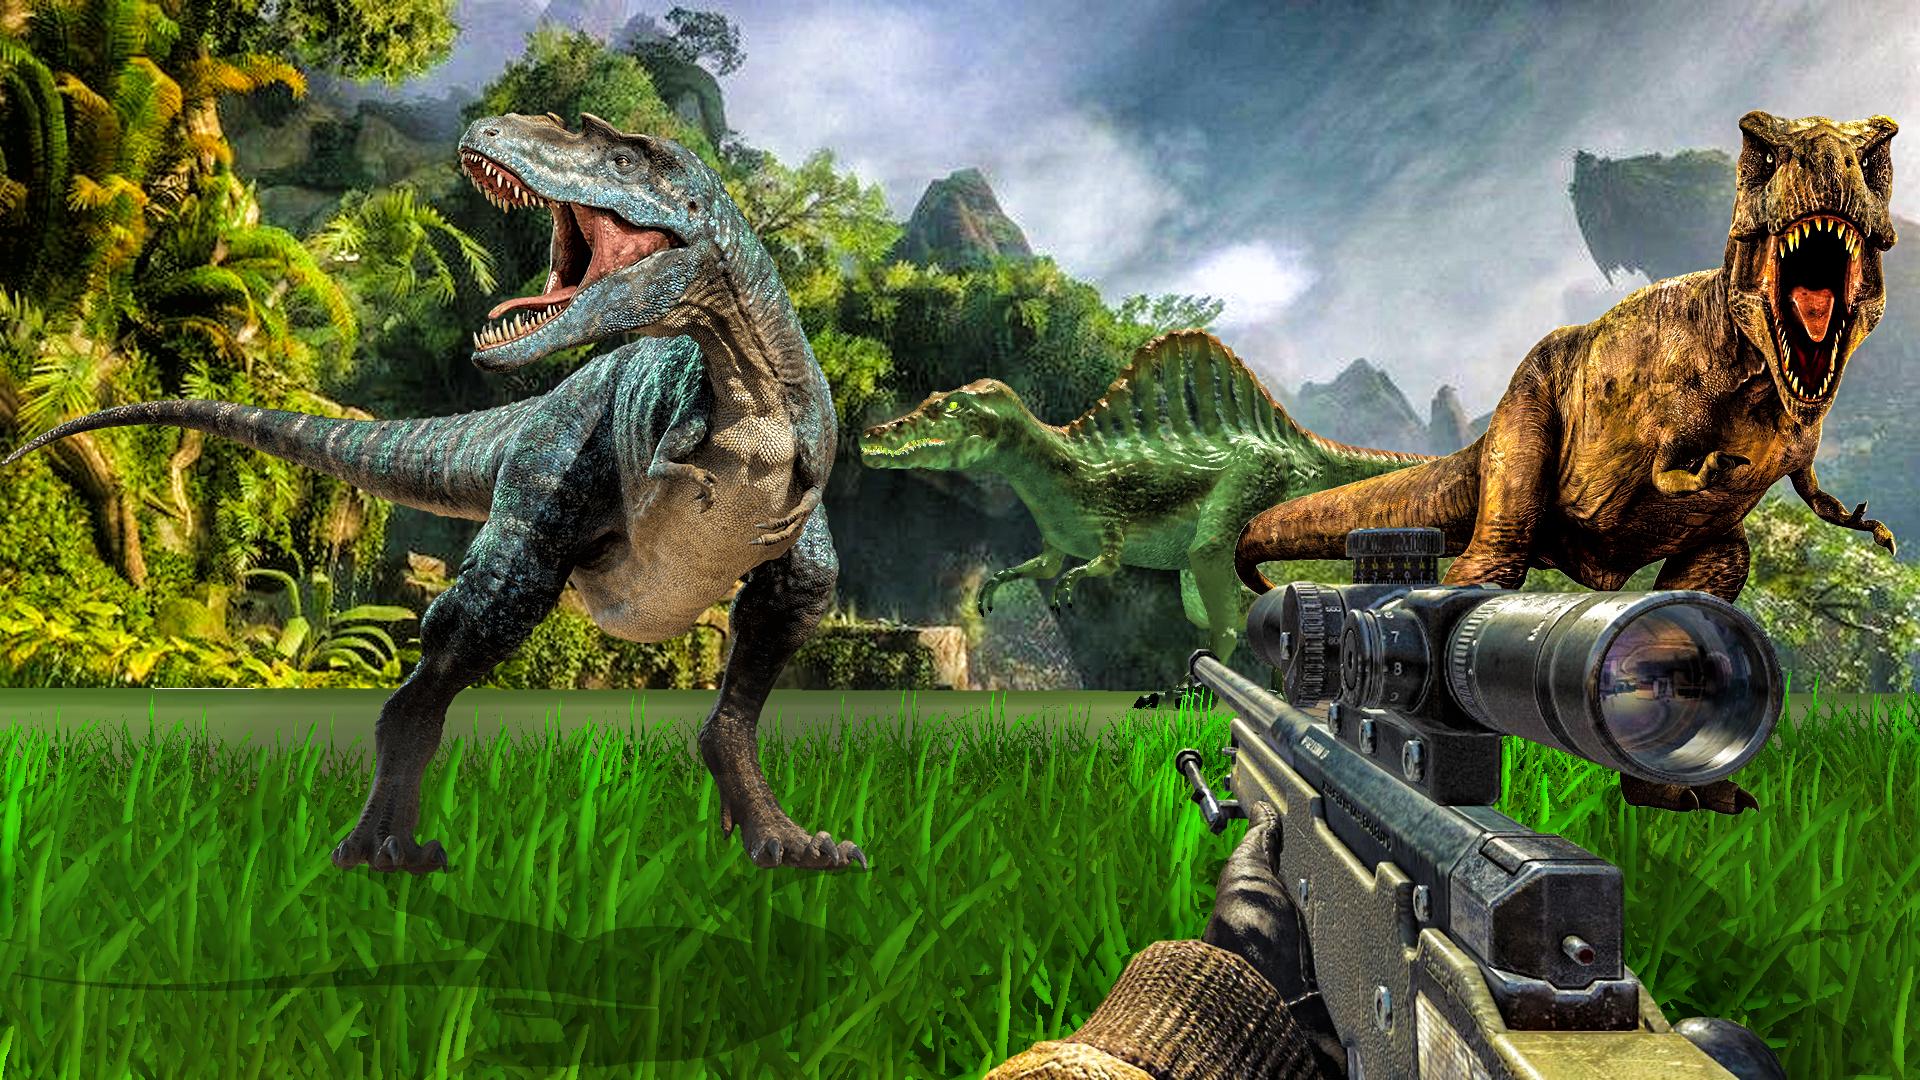 Carnivores Dino hunter game-Dinosaur game shooting 9.1 Screenshot 3